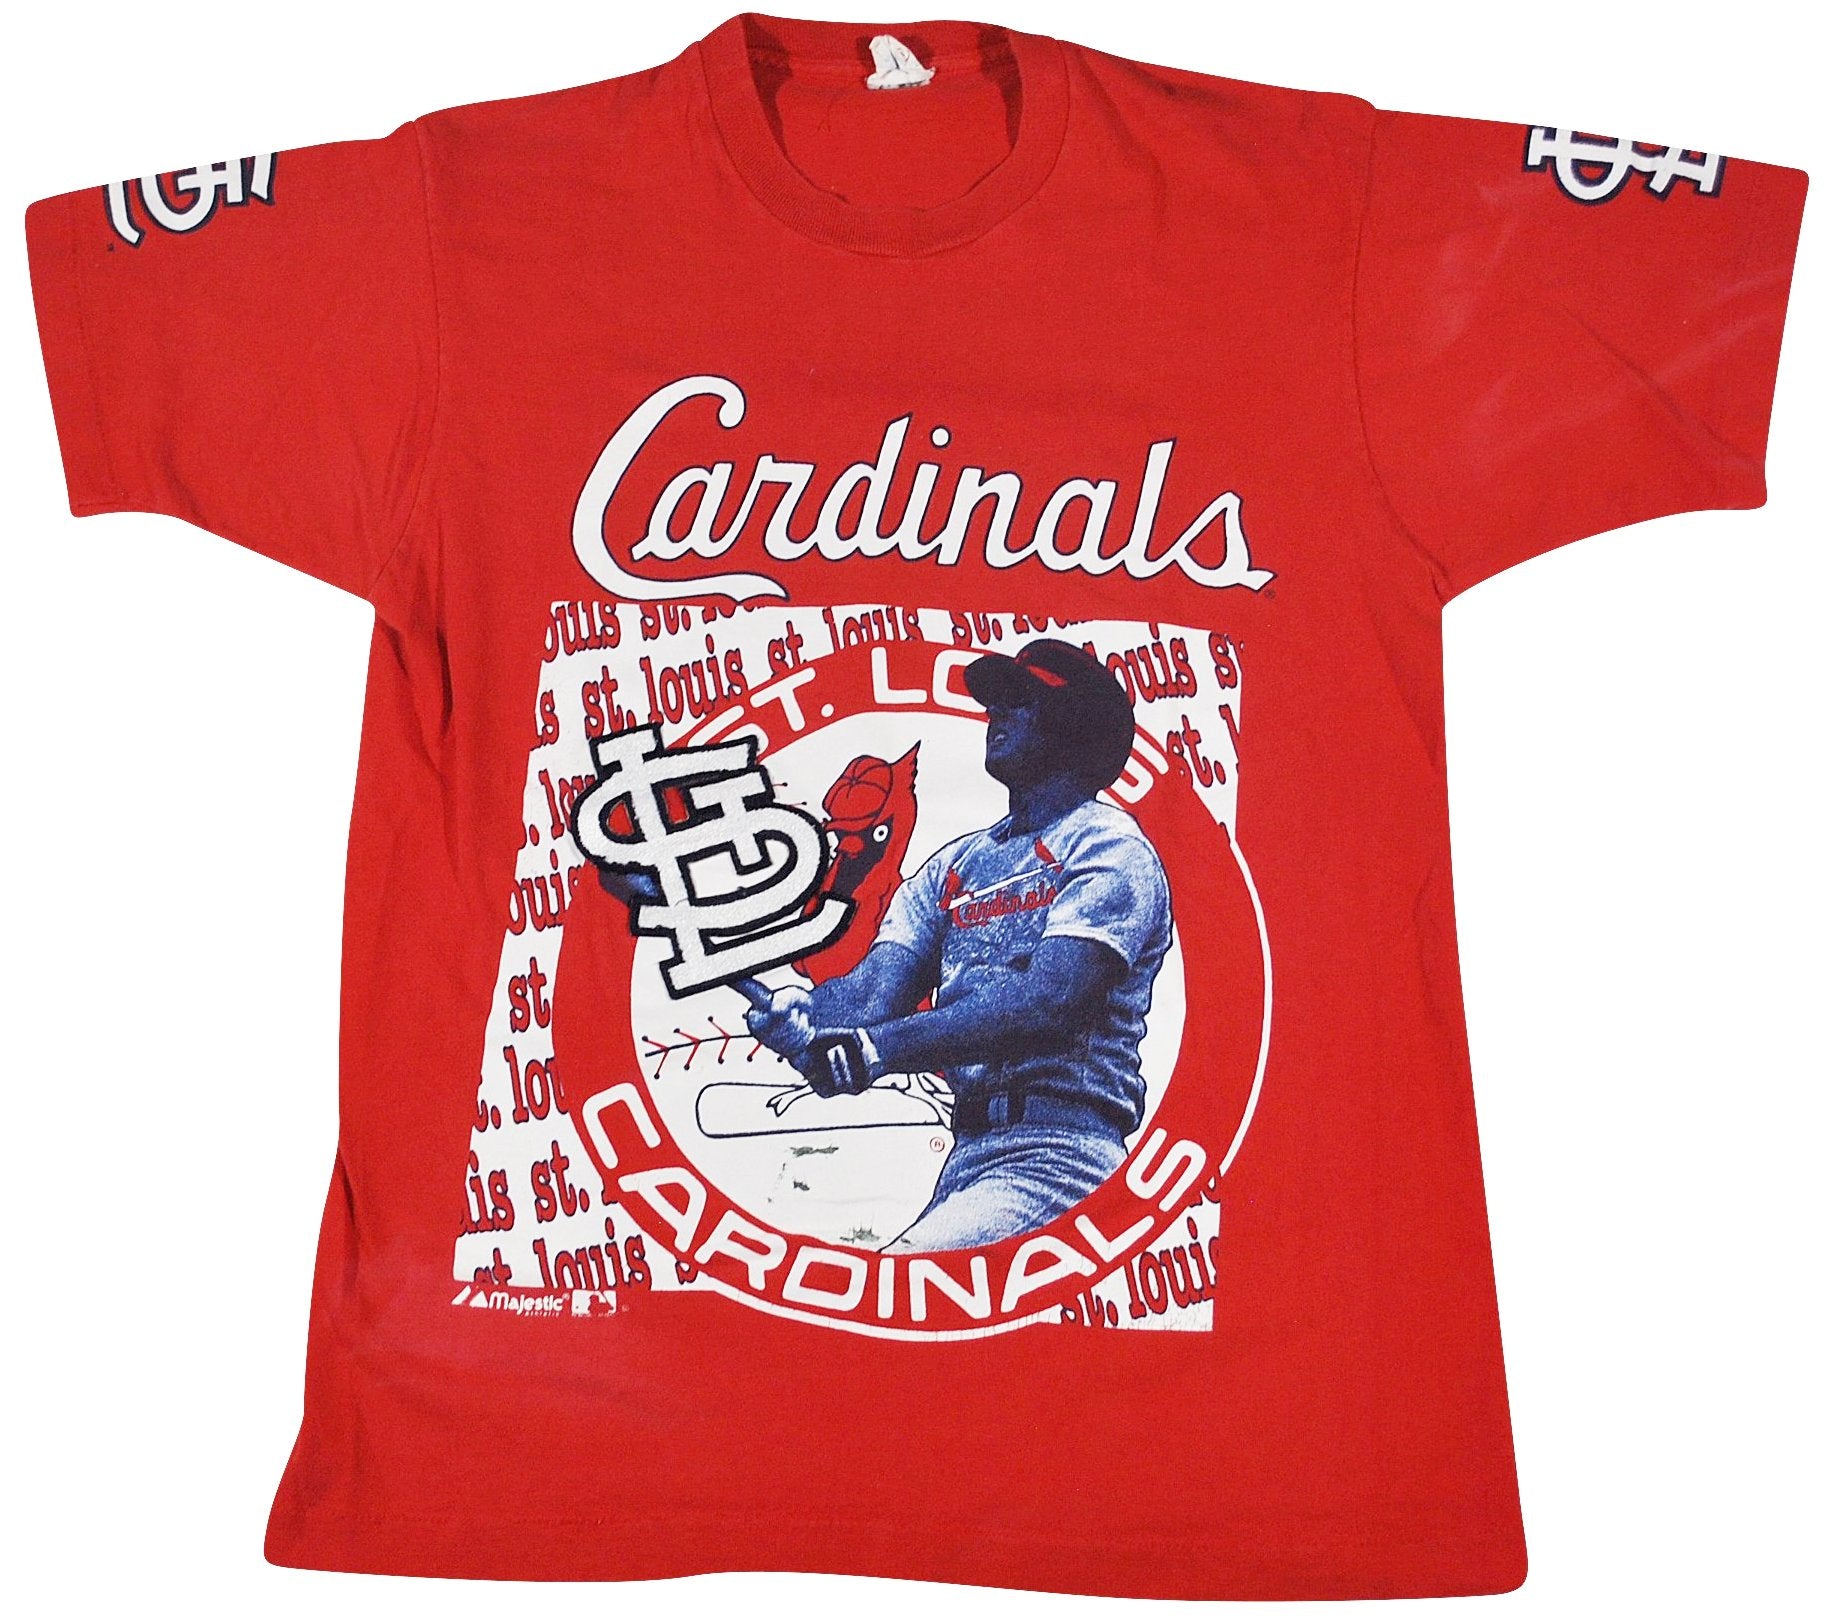 Vintage, Tops, Vintage St Louis Cardinals Shirt